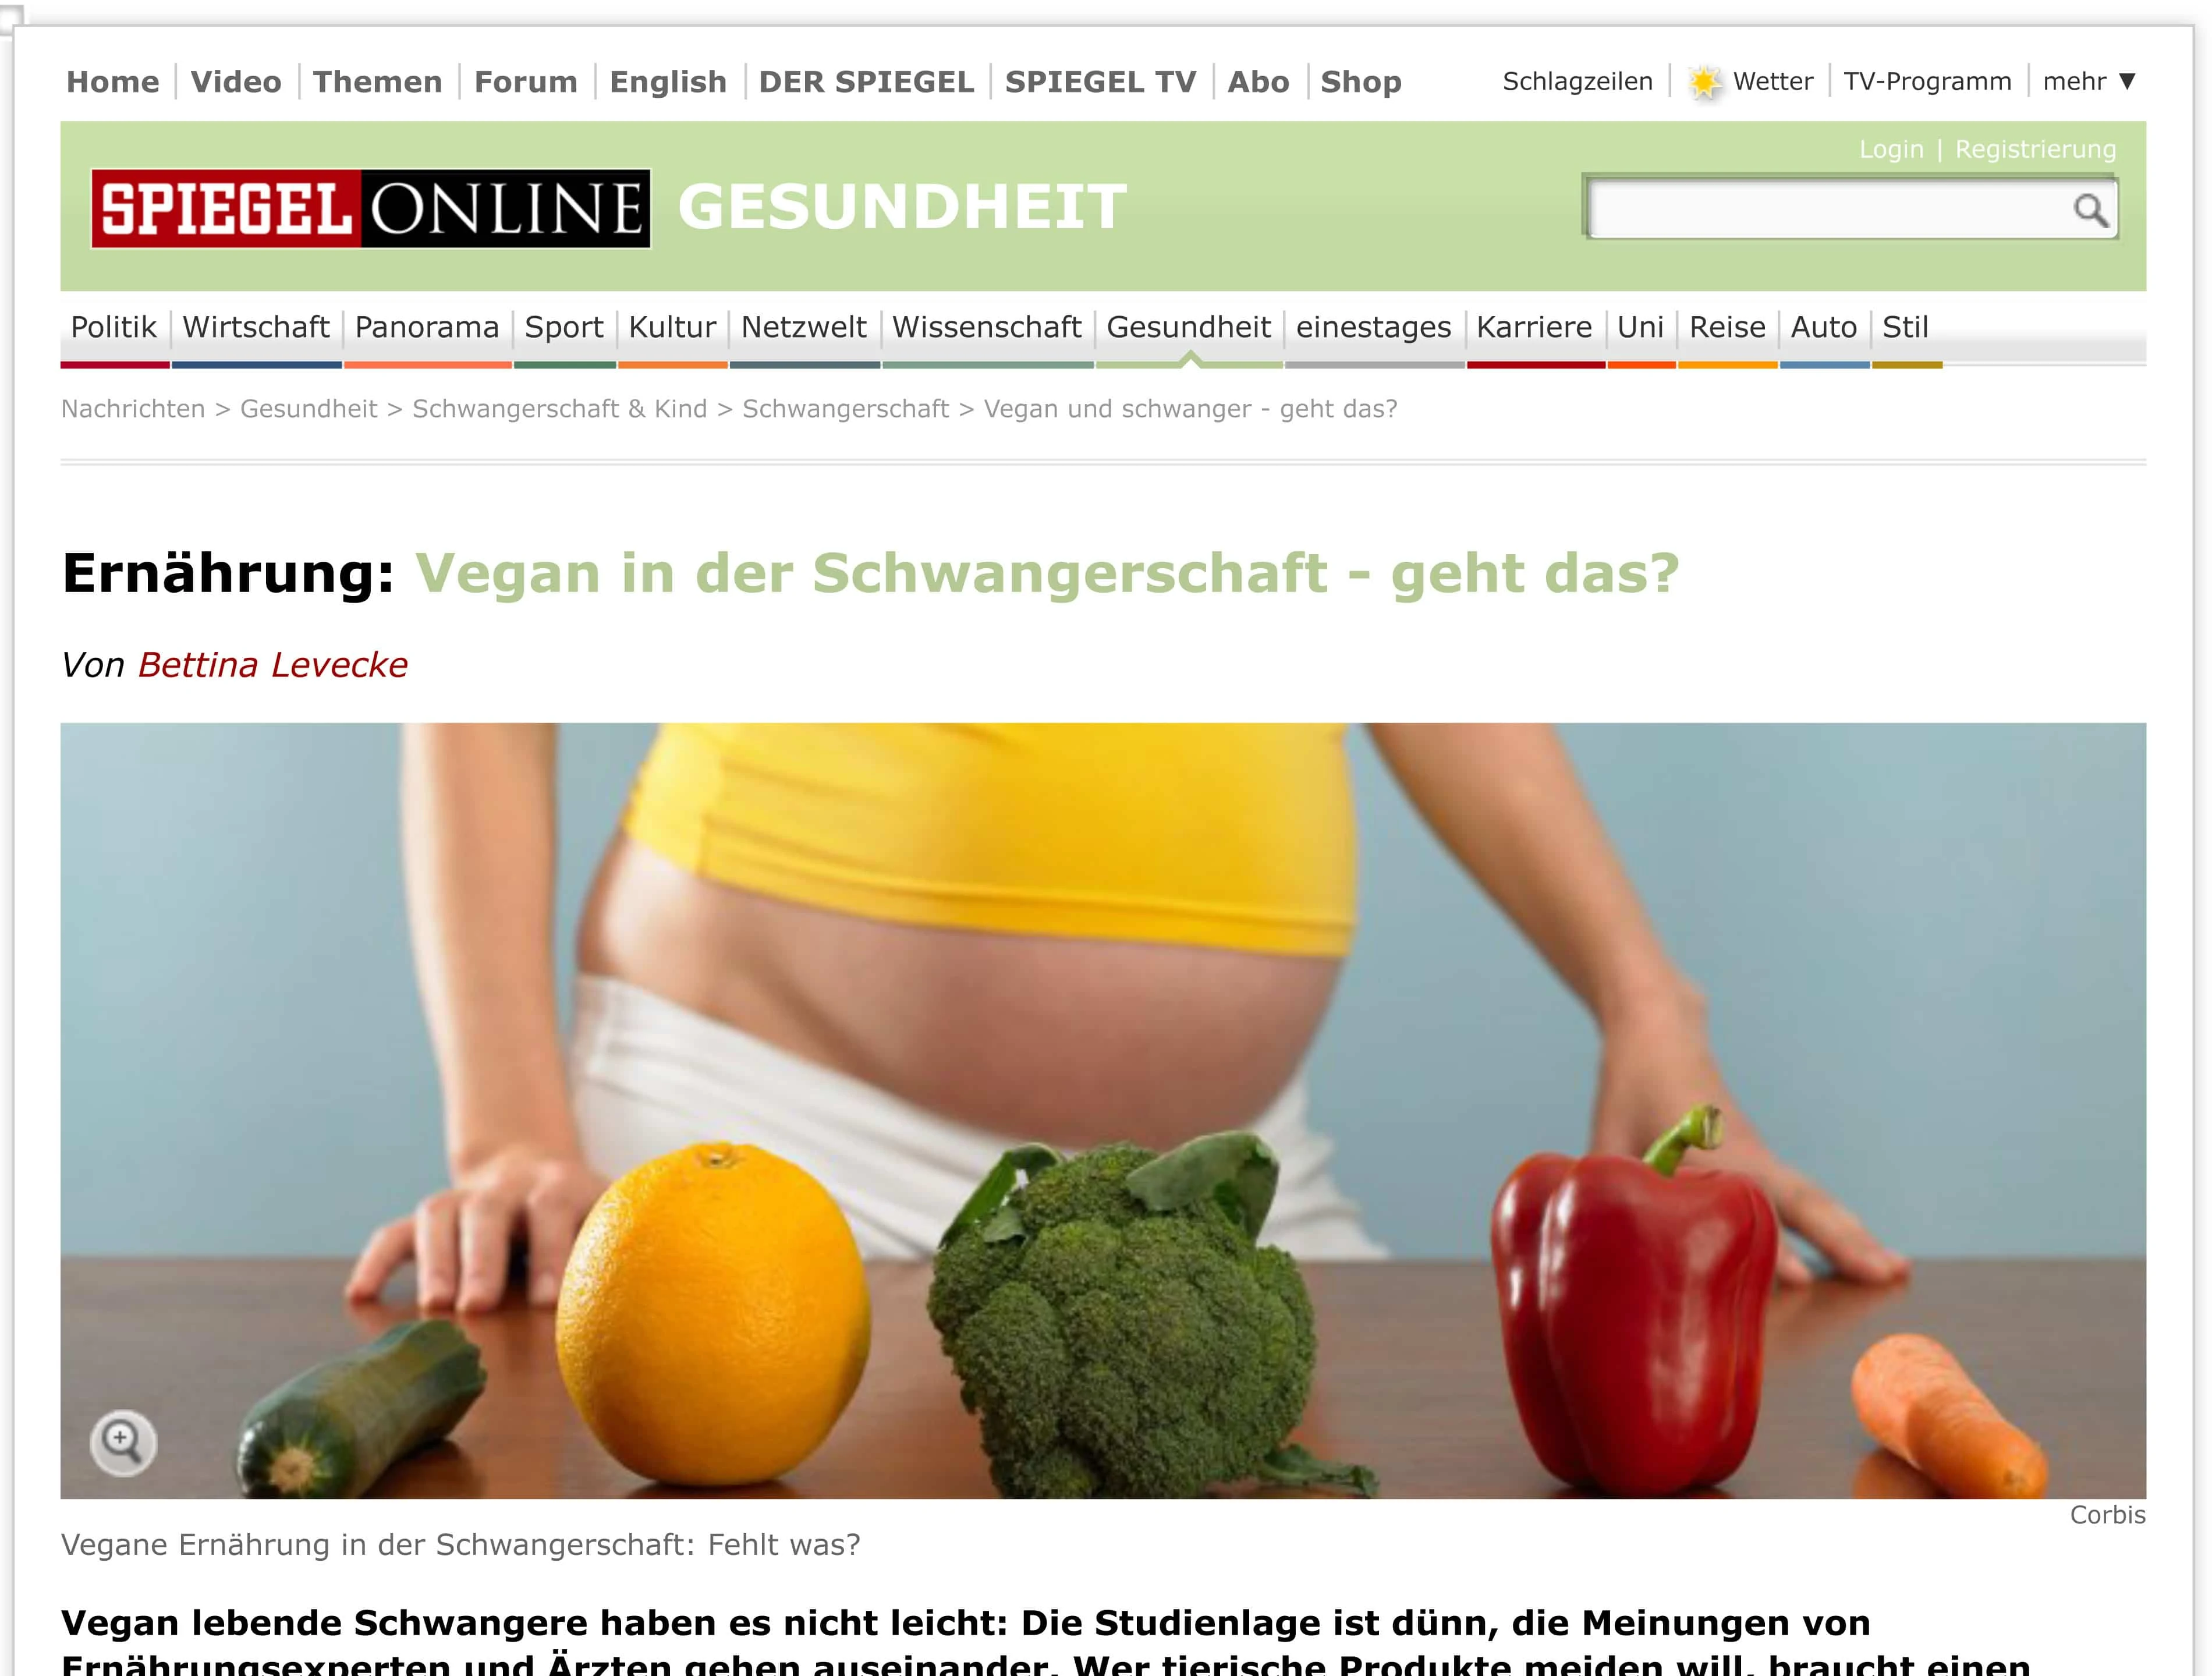 Vegan und schwanger - geht das? - SPIEGEL ONLINE-1